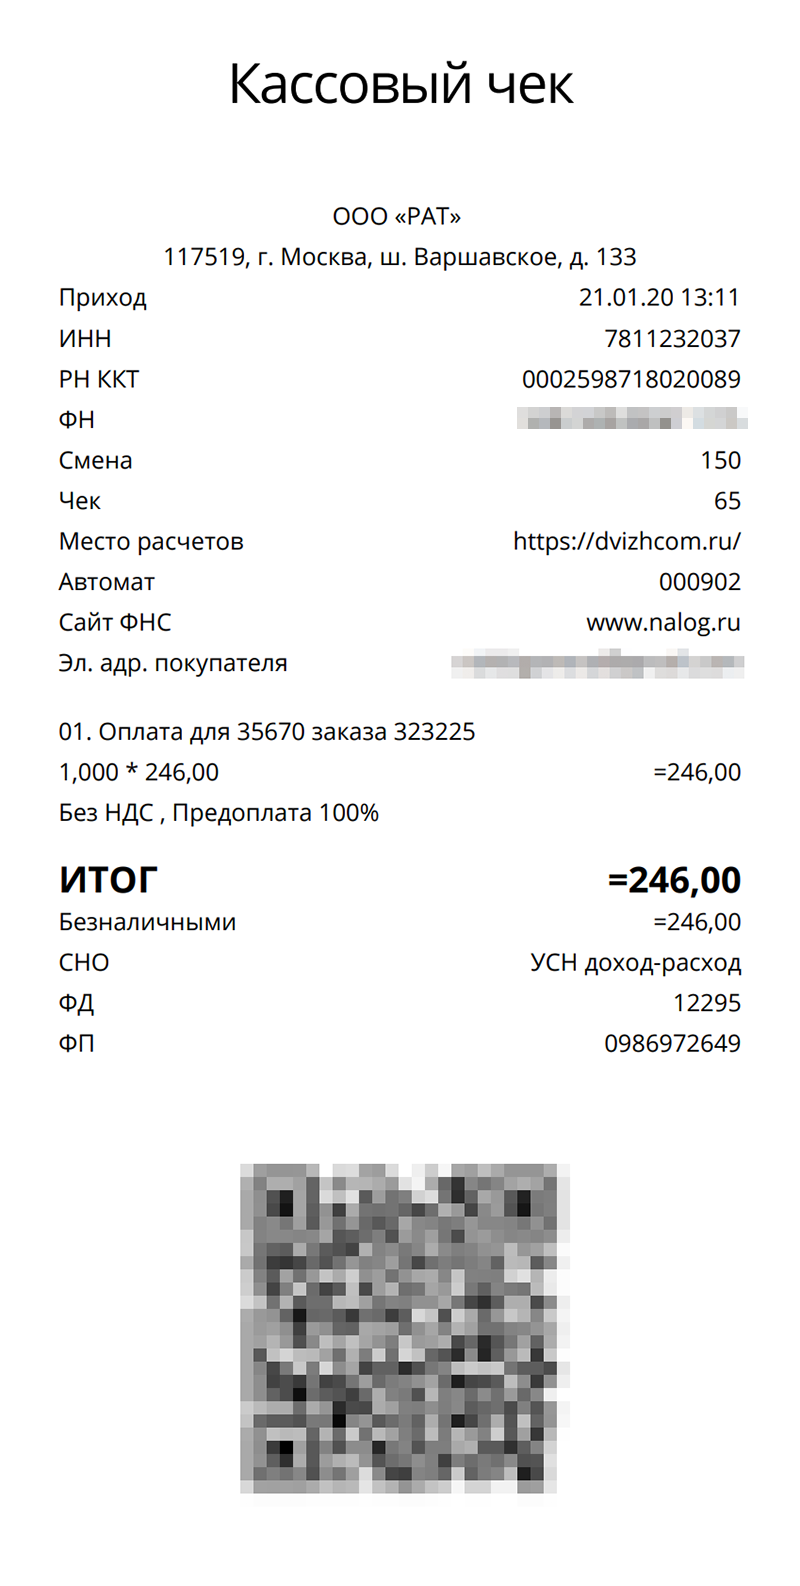 Так выглядит небрендированный электронный чек из интернет-магазина автозапчастей, который мне отправила онлайн-касса